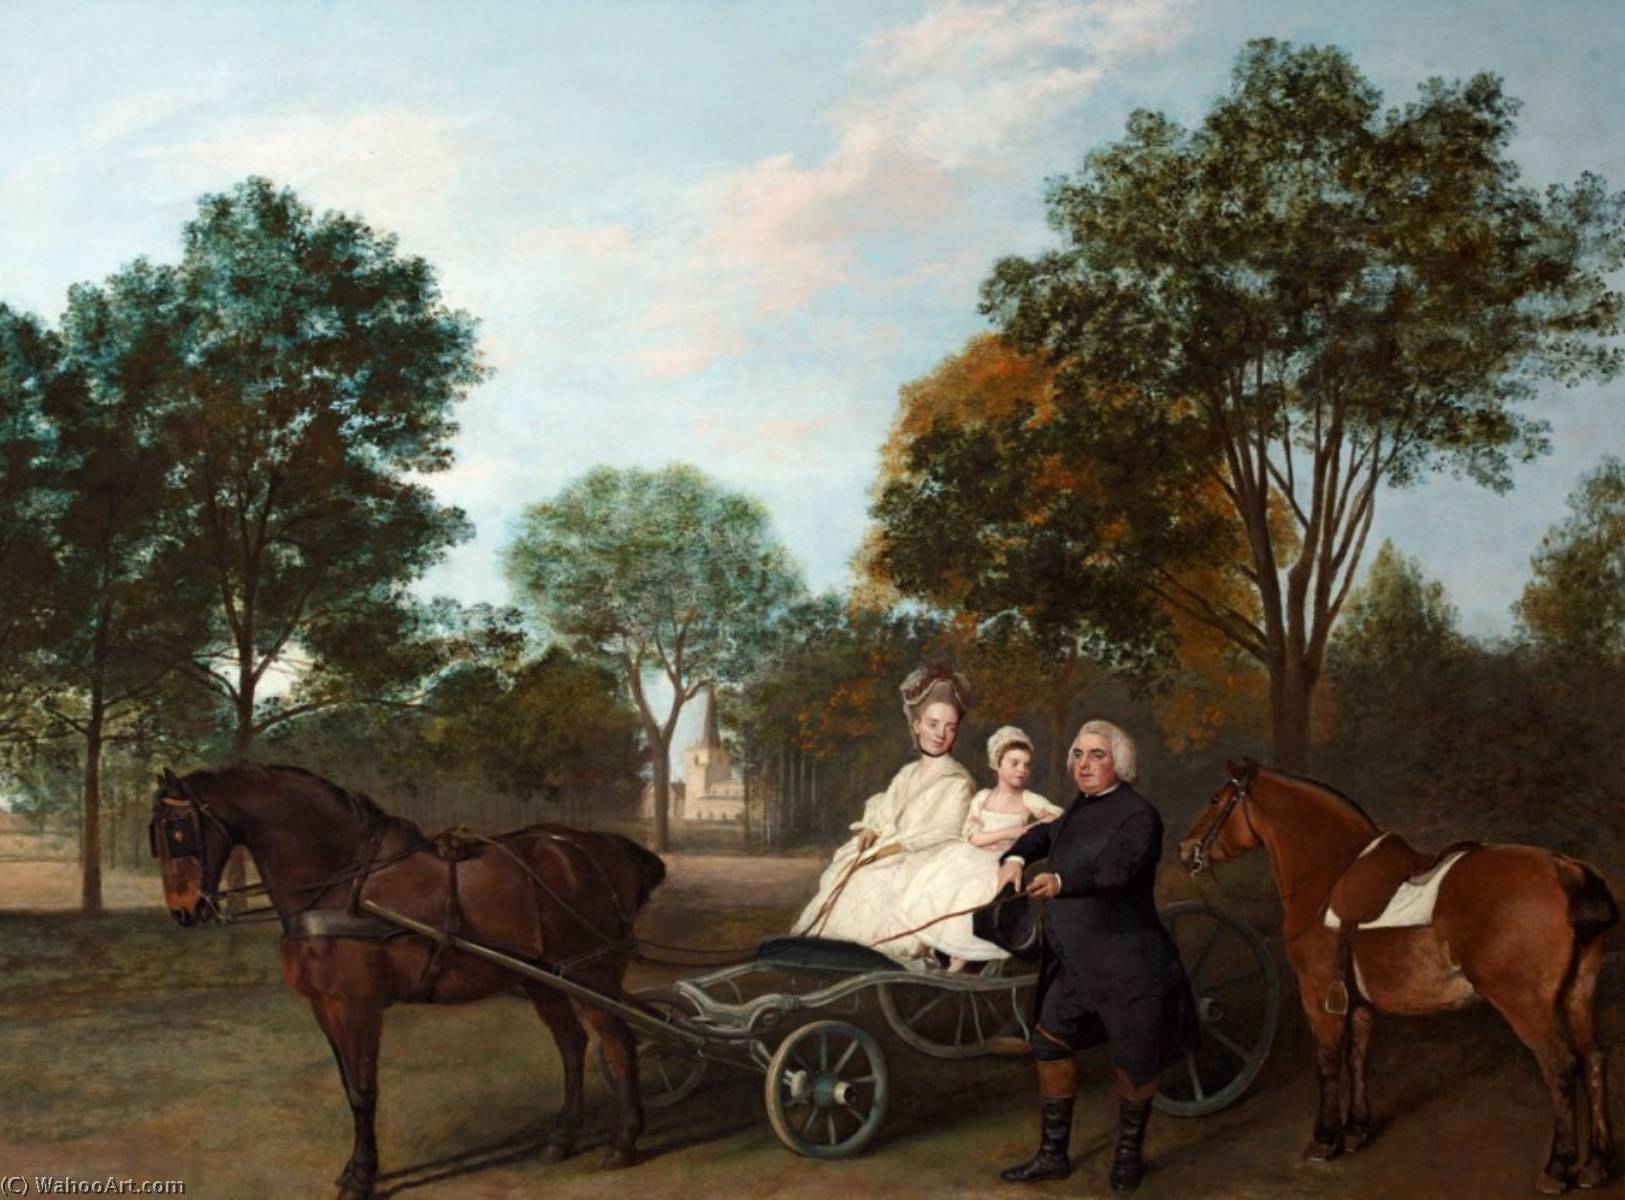 WikiOO.org - אנציקלופדיה לאמנויות יפות - ציור, יצירות אמנות George Stubbs - The Reverend Robert Carter Thelwall and His Family